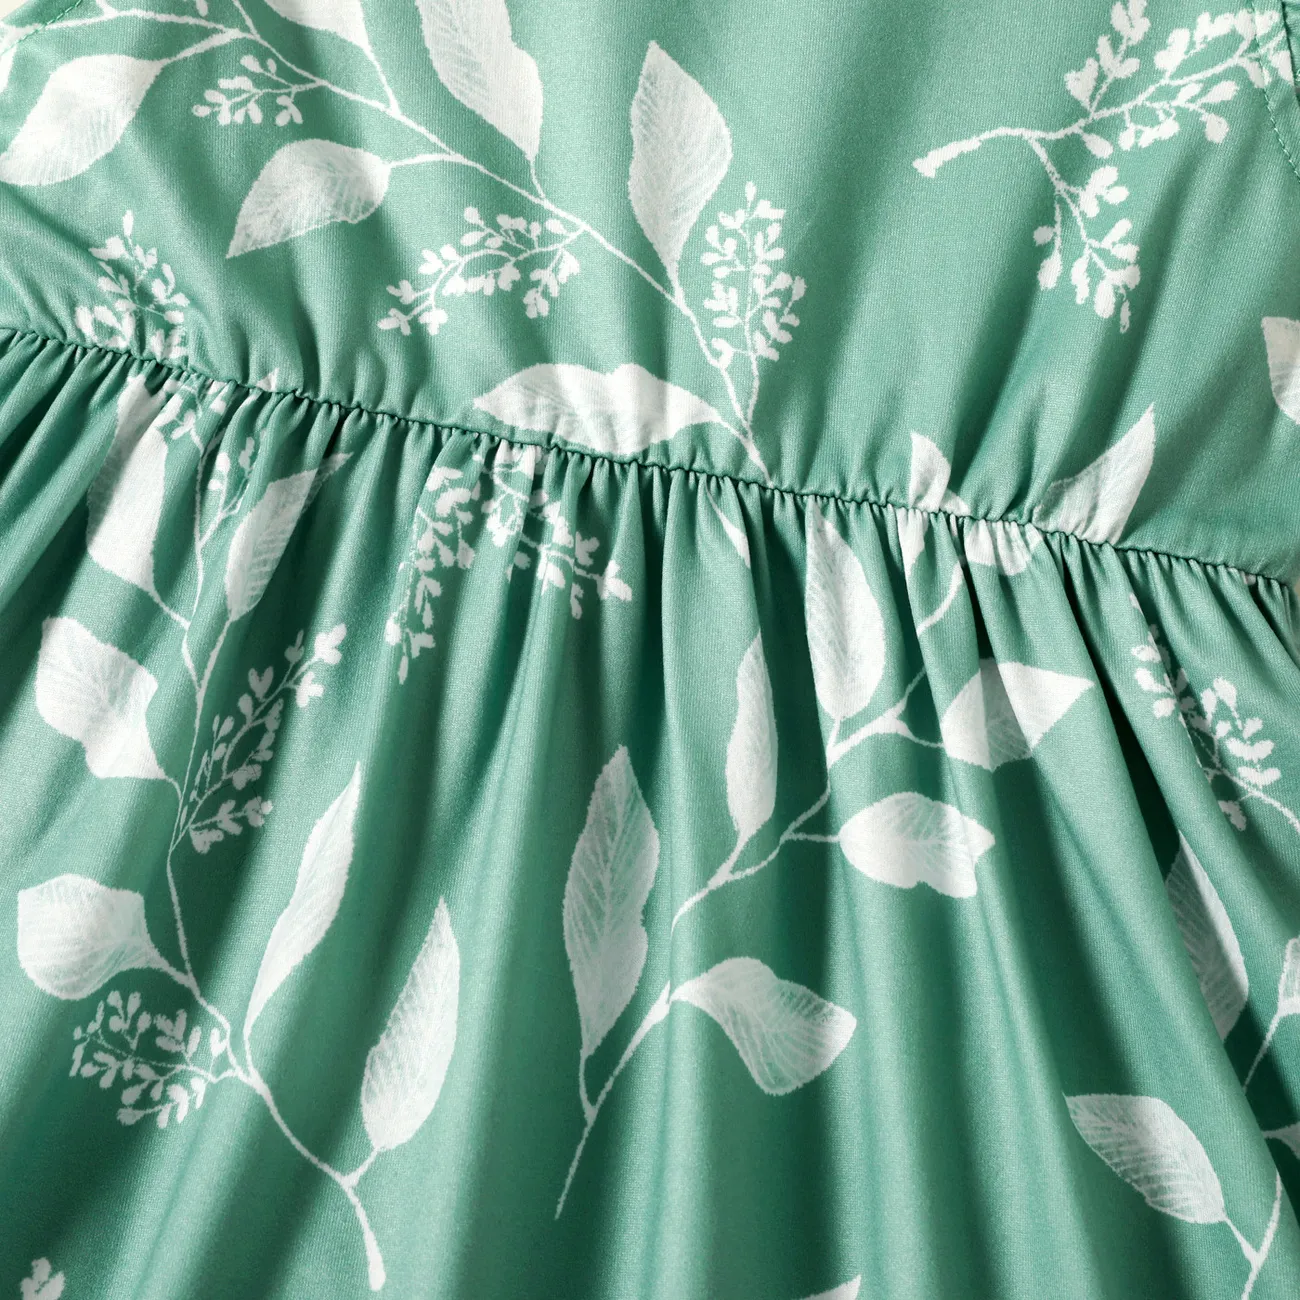 Toddler Girl Sweet Flutter-sleeve Floral Dress Light Green big image 1